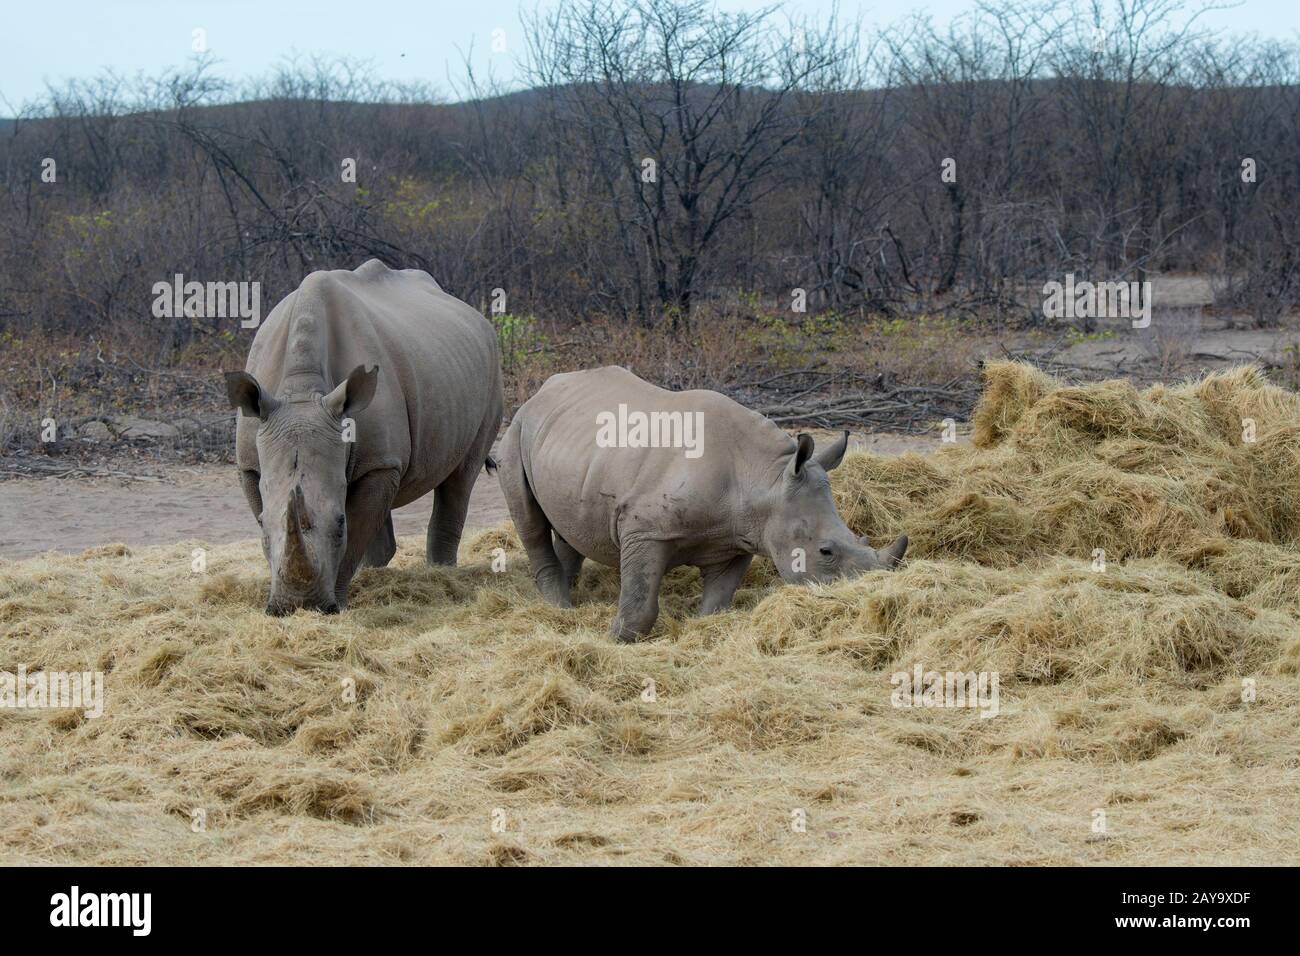 Una madre e un bambino rinoceronte bianco o rhinoceronte a lisca quadrata (Ceratotherium simum) mangiare fieno, un programma di alimentazione a causa della situazione di progetto, in th Foto Stock